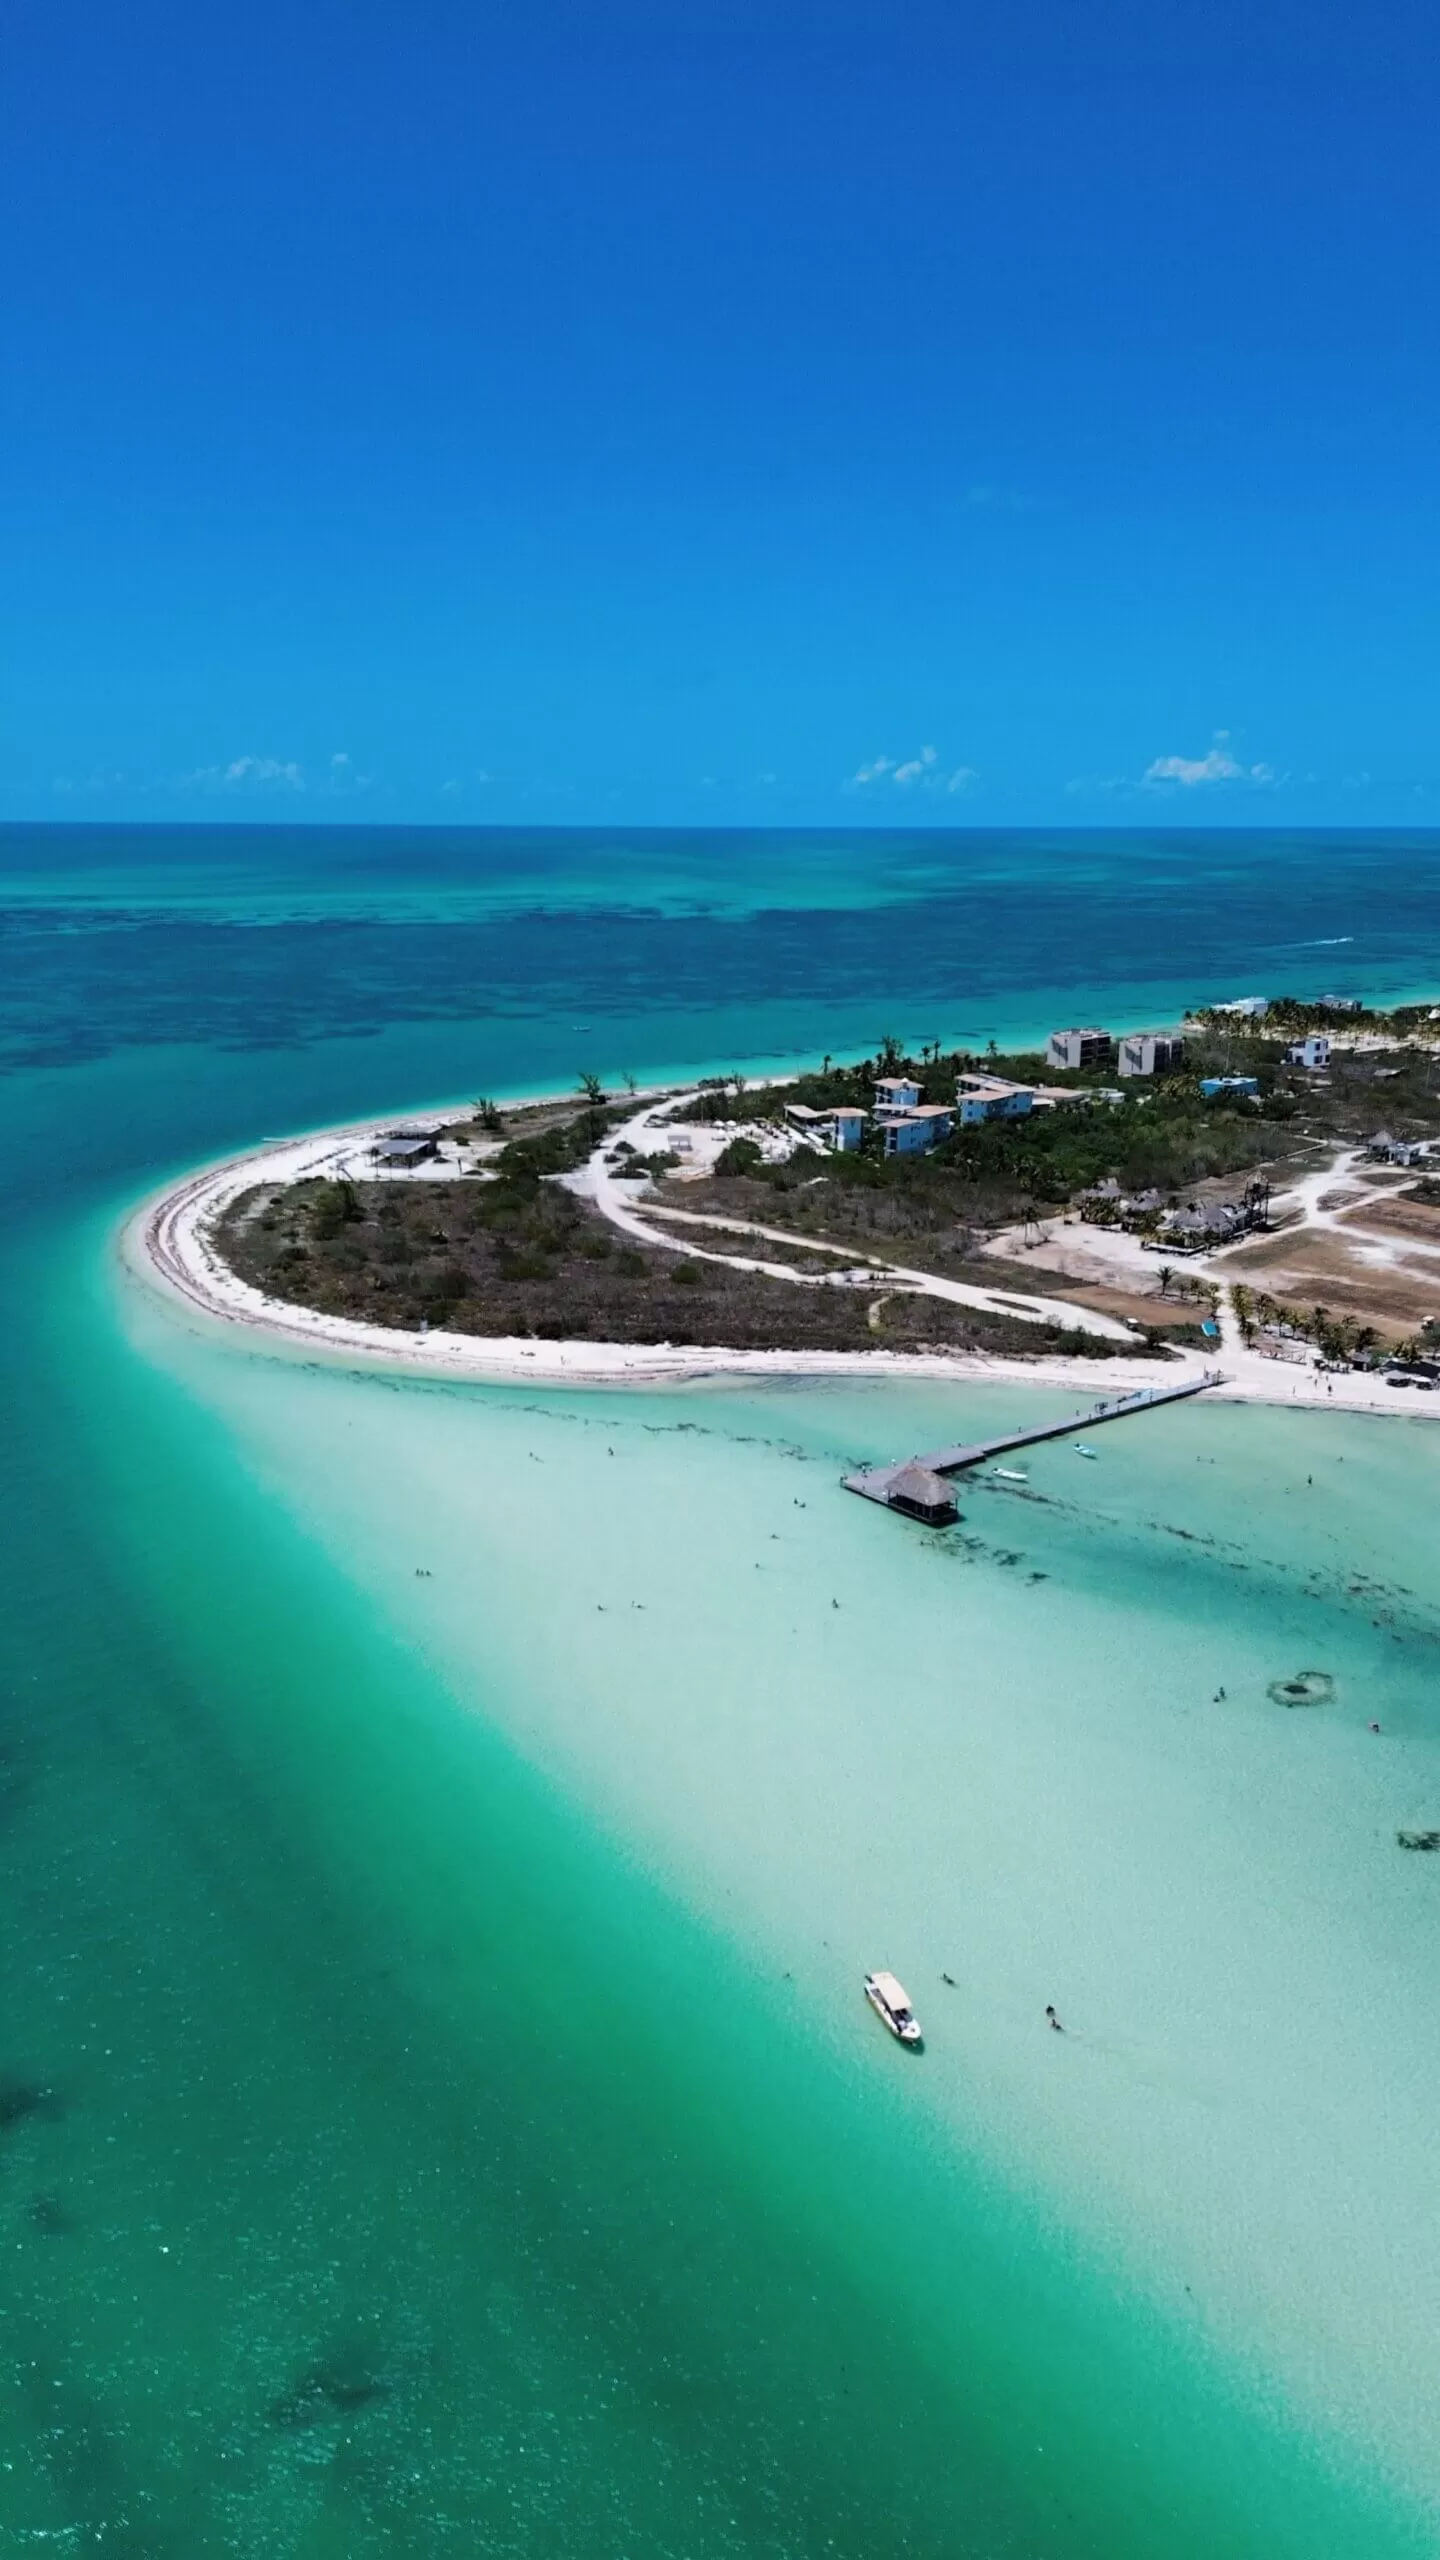 foto de punta cocos tomada con el drone. se ve la playa, el mar y algunos muelles. el agua es verde, celeste y azul